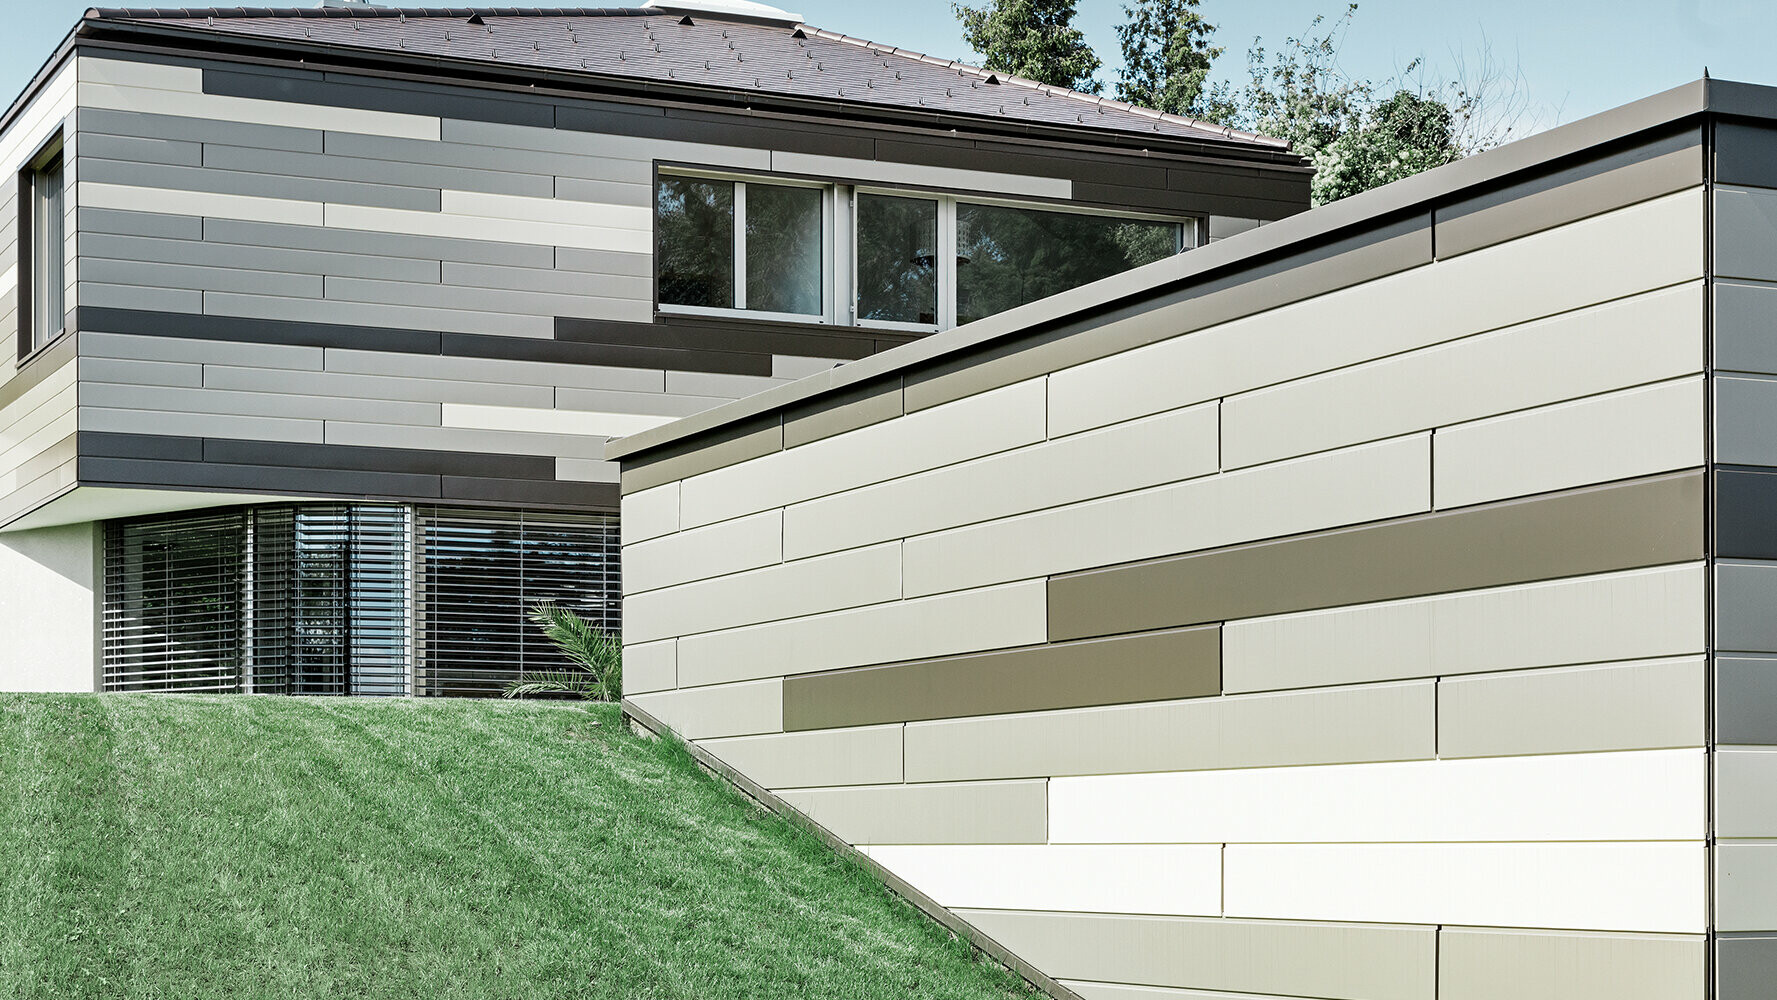 Moderna stanovanjska hiša z elementi PREFA Siding v treh različnih barvah na fasadi